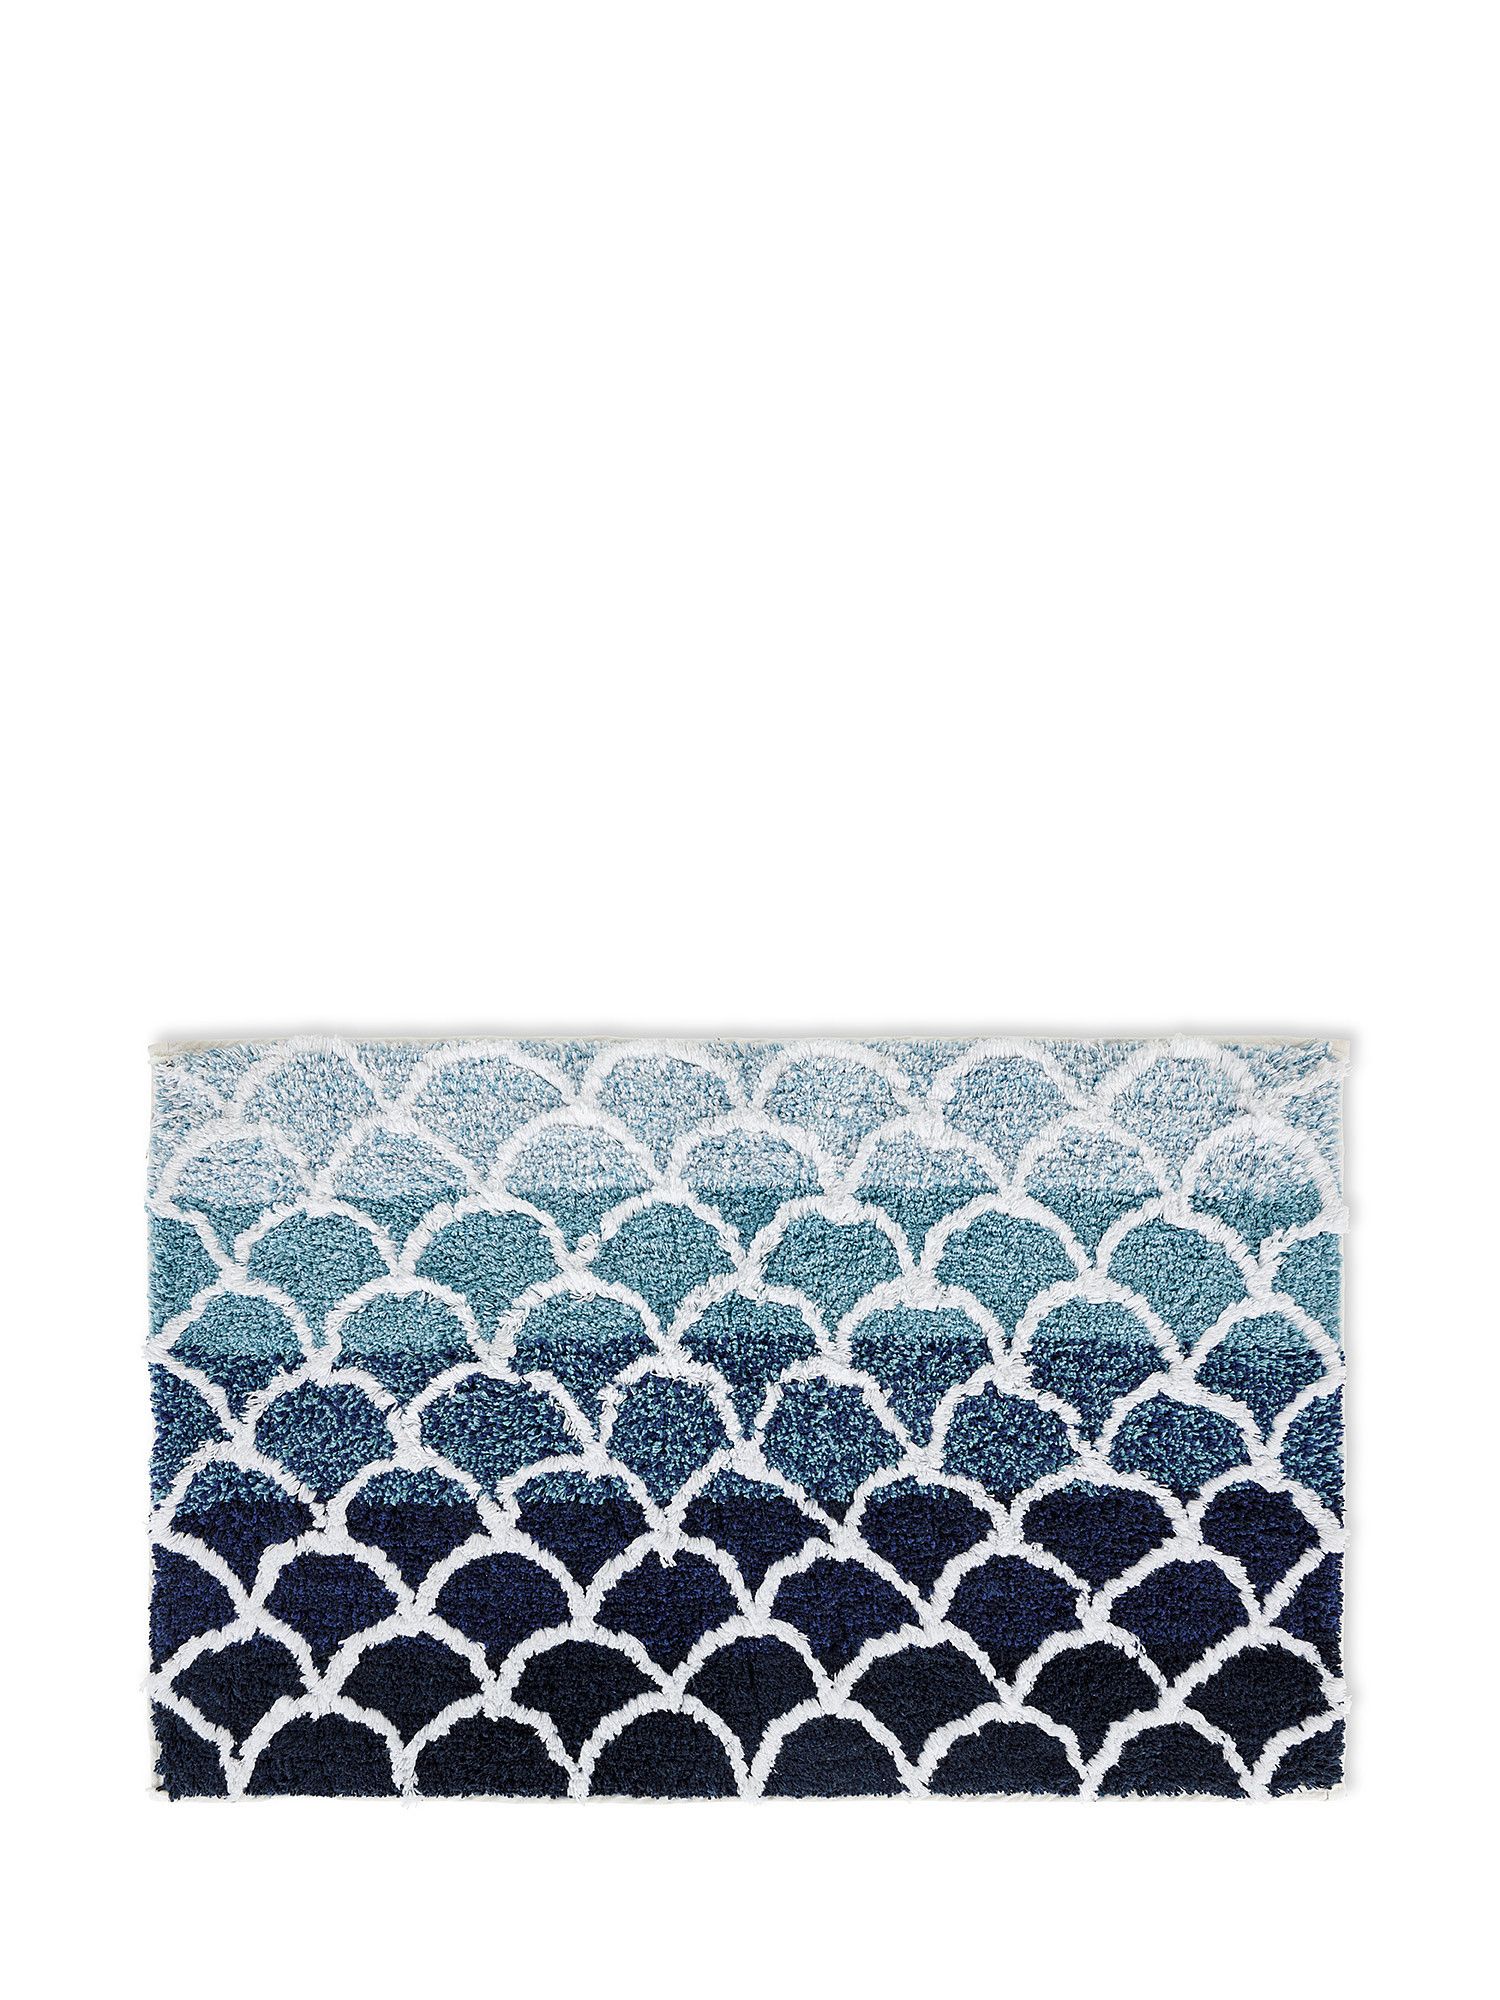 Tappeto bagno cotone motivo sfumato, Azzurro, large image number 0